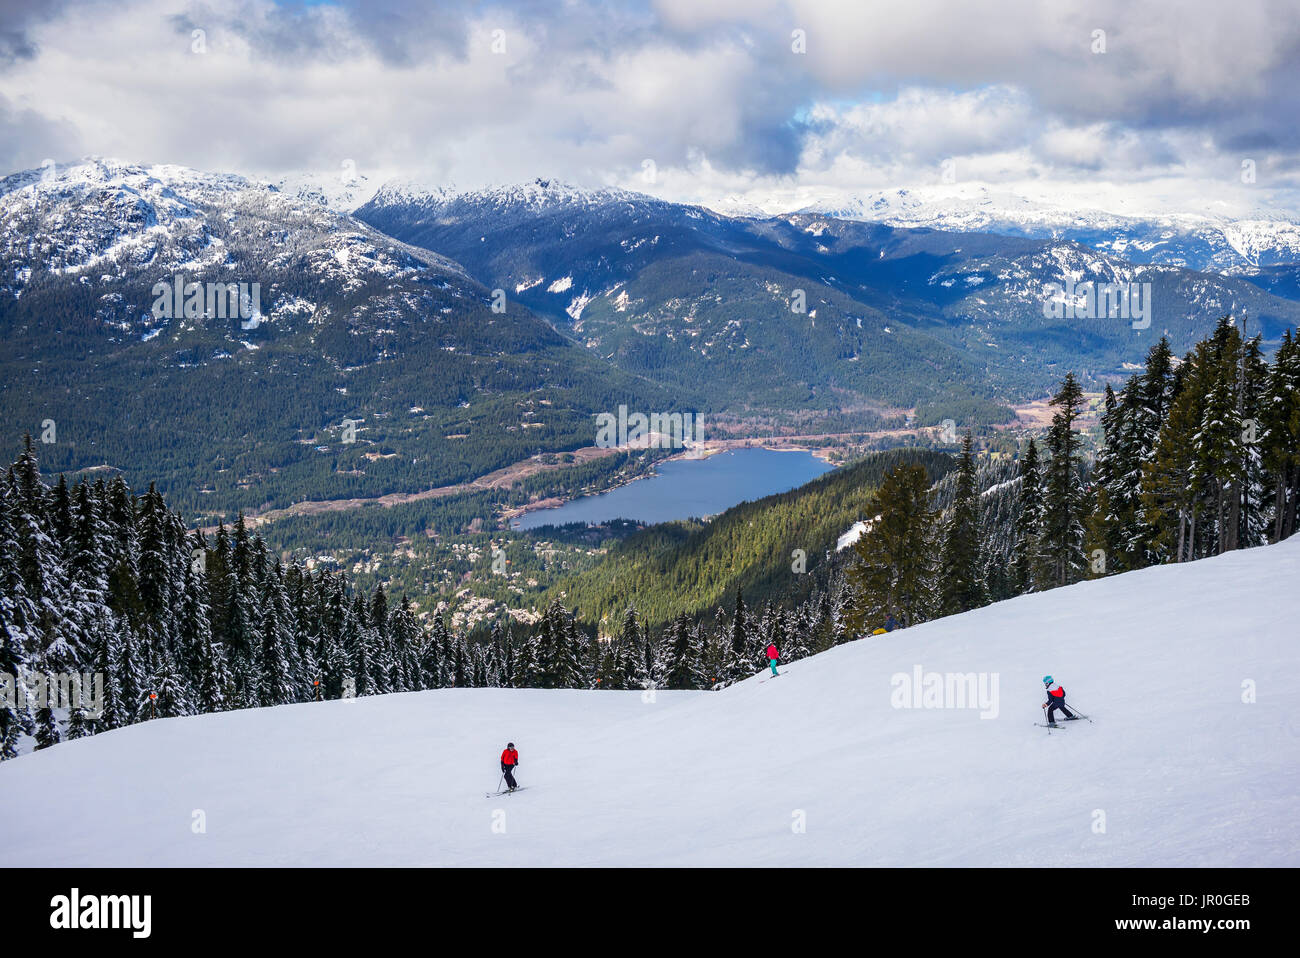 Skifahrer und Snowboarder auf dem Weg nach Unten eine Ski Hill mit herrlichem Blick auf See und in den kanadischen Rocky Mountains Stockfoto